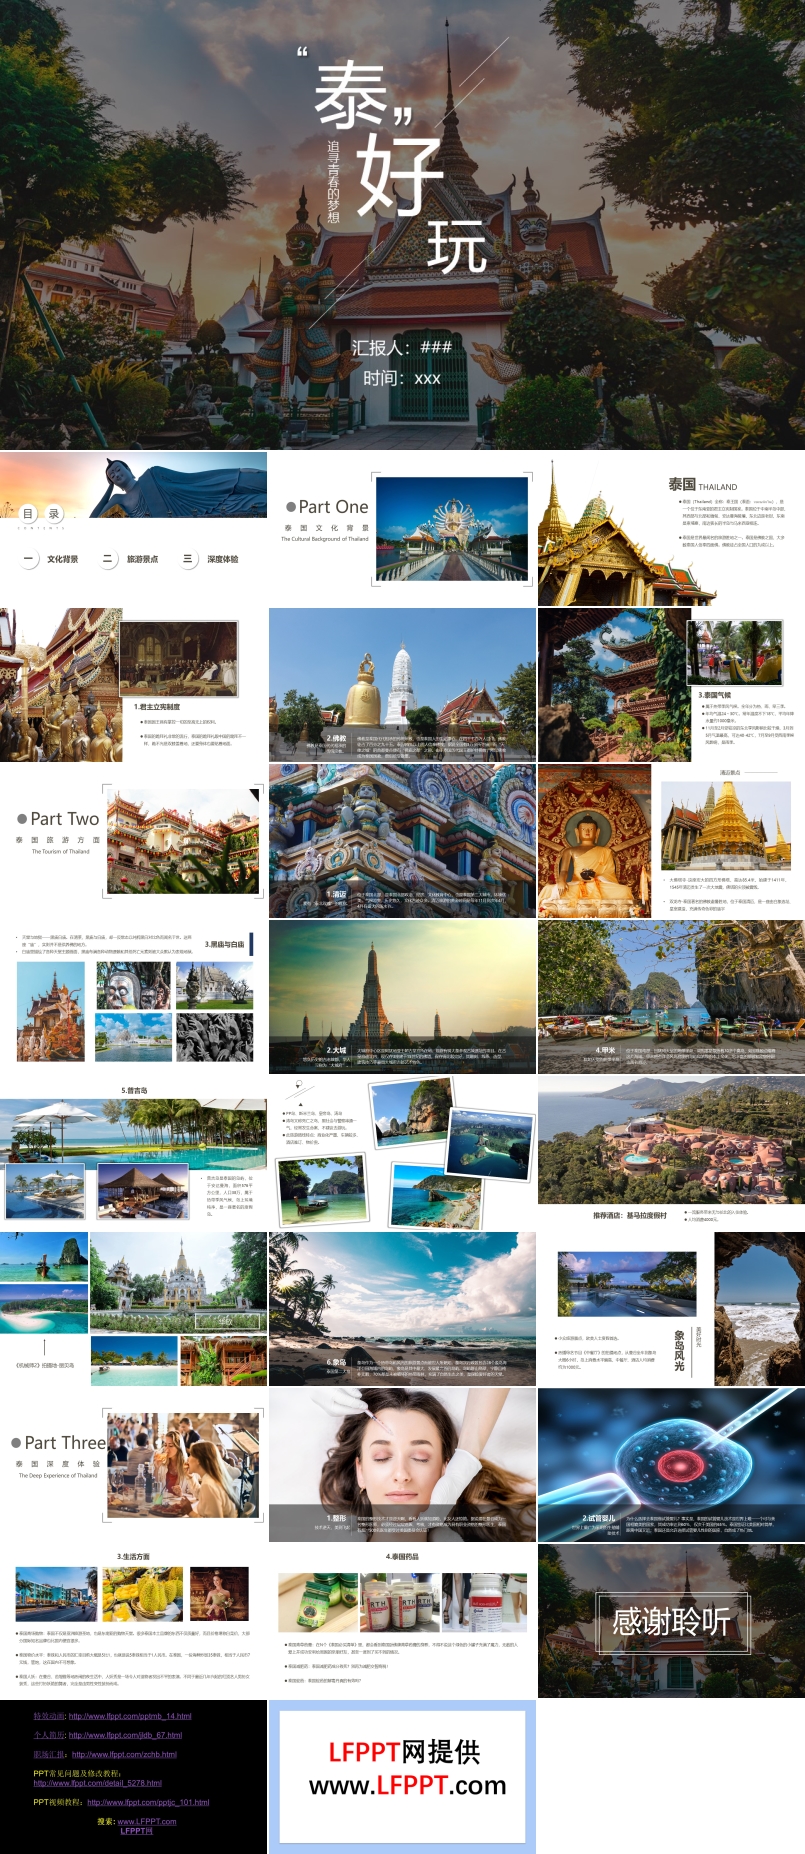 泰国风情东南亚旅游文化宣传介绍PPT模板